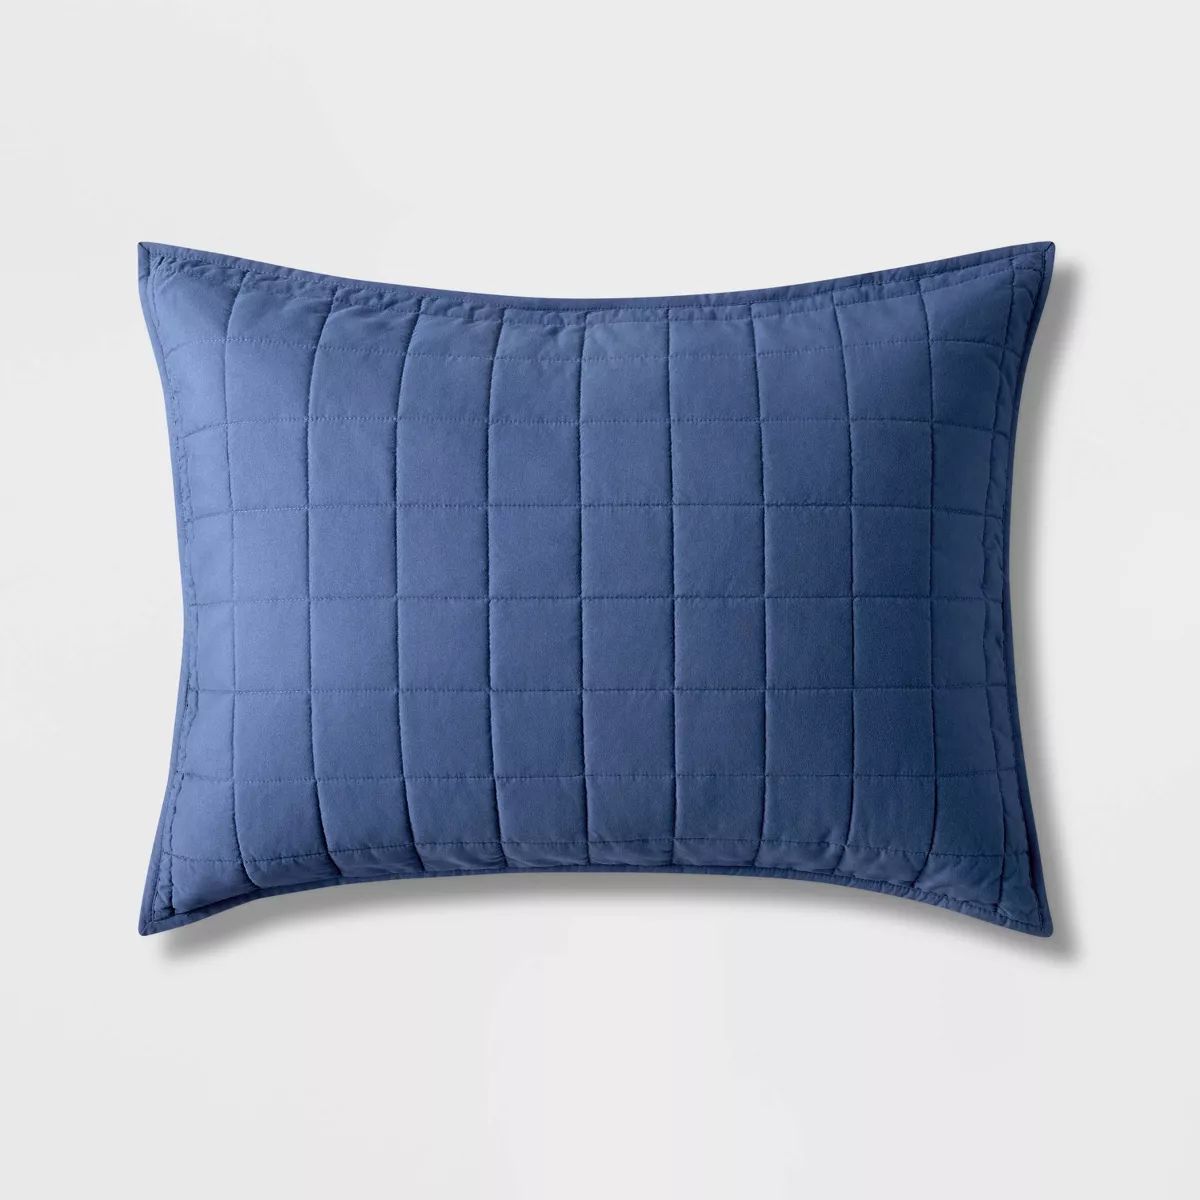 Box Stitch Microfiber Kids' Sham Green - Pillowfort™ | Target